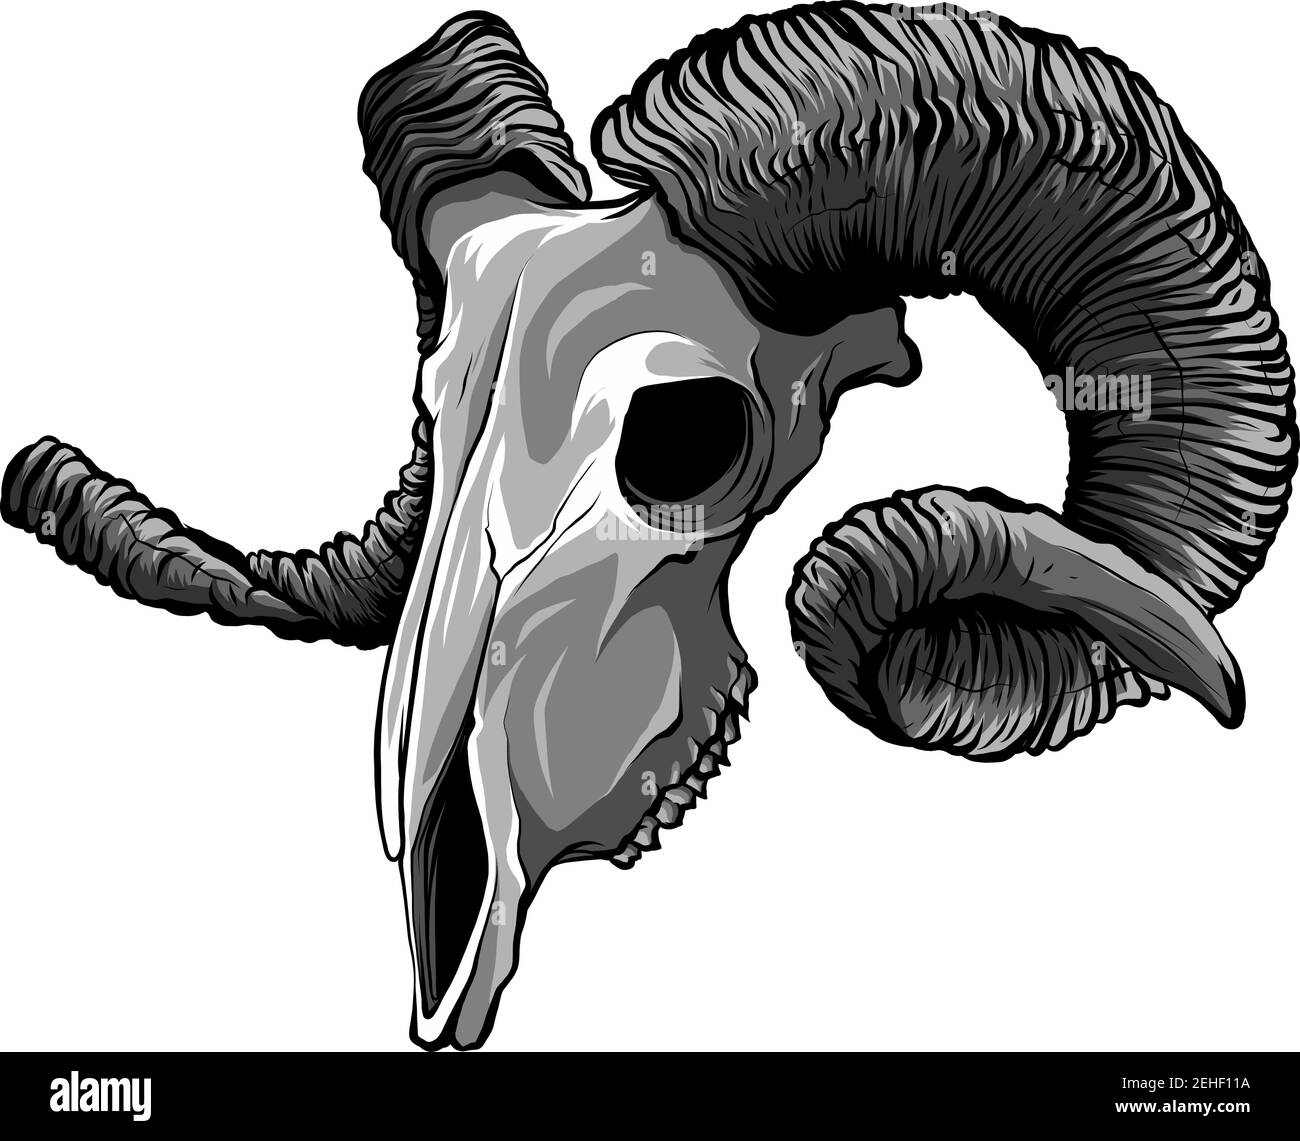 Realistic red goat skull. Illustration for designer on a white background. Stock Vector